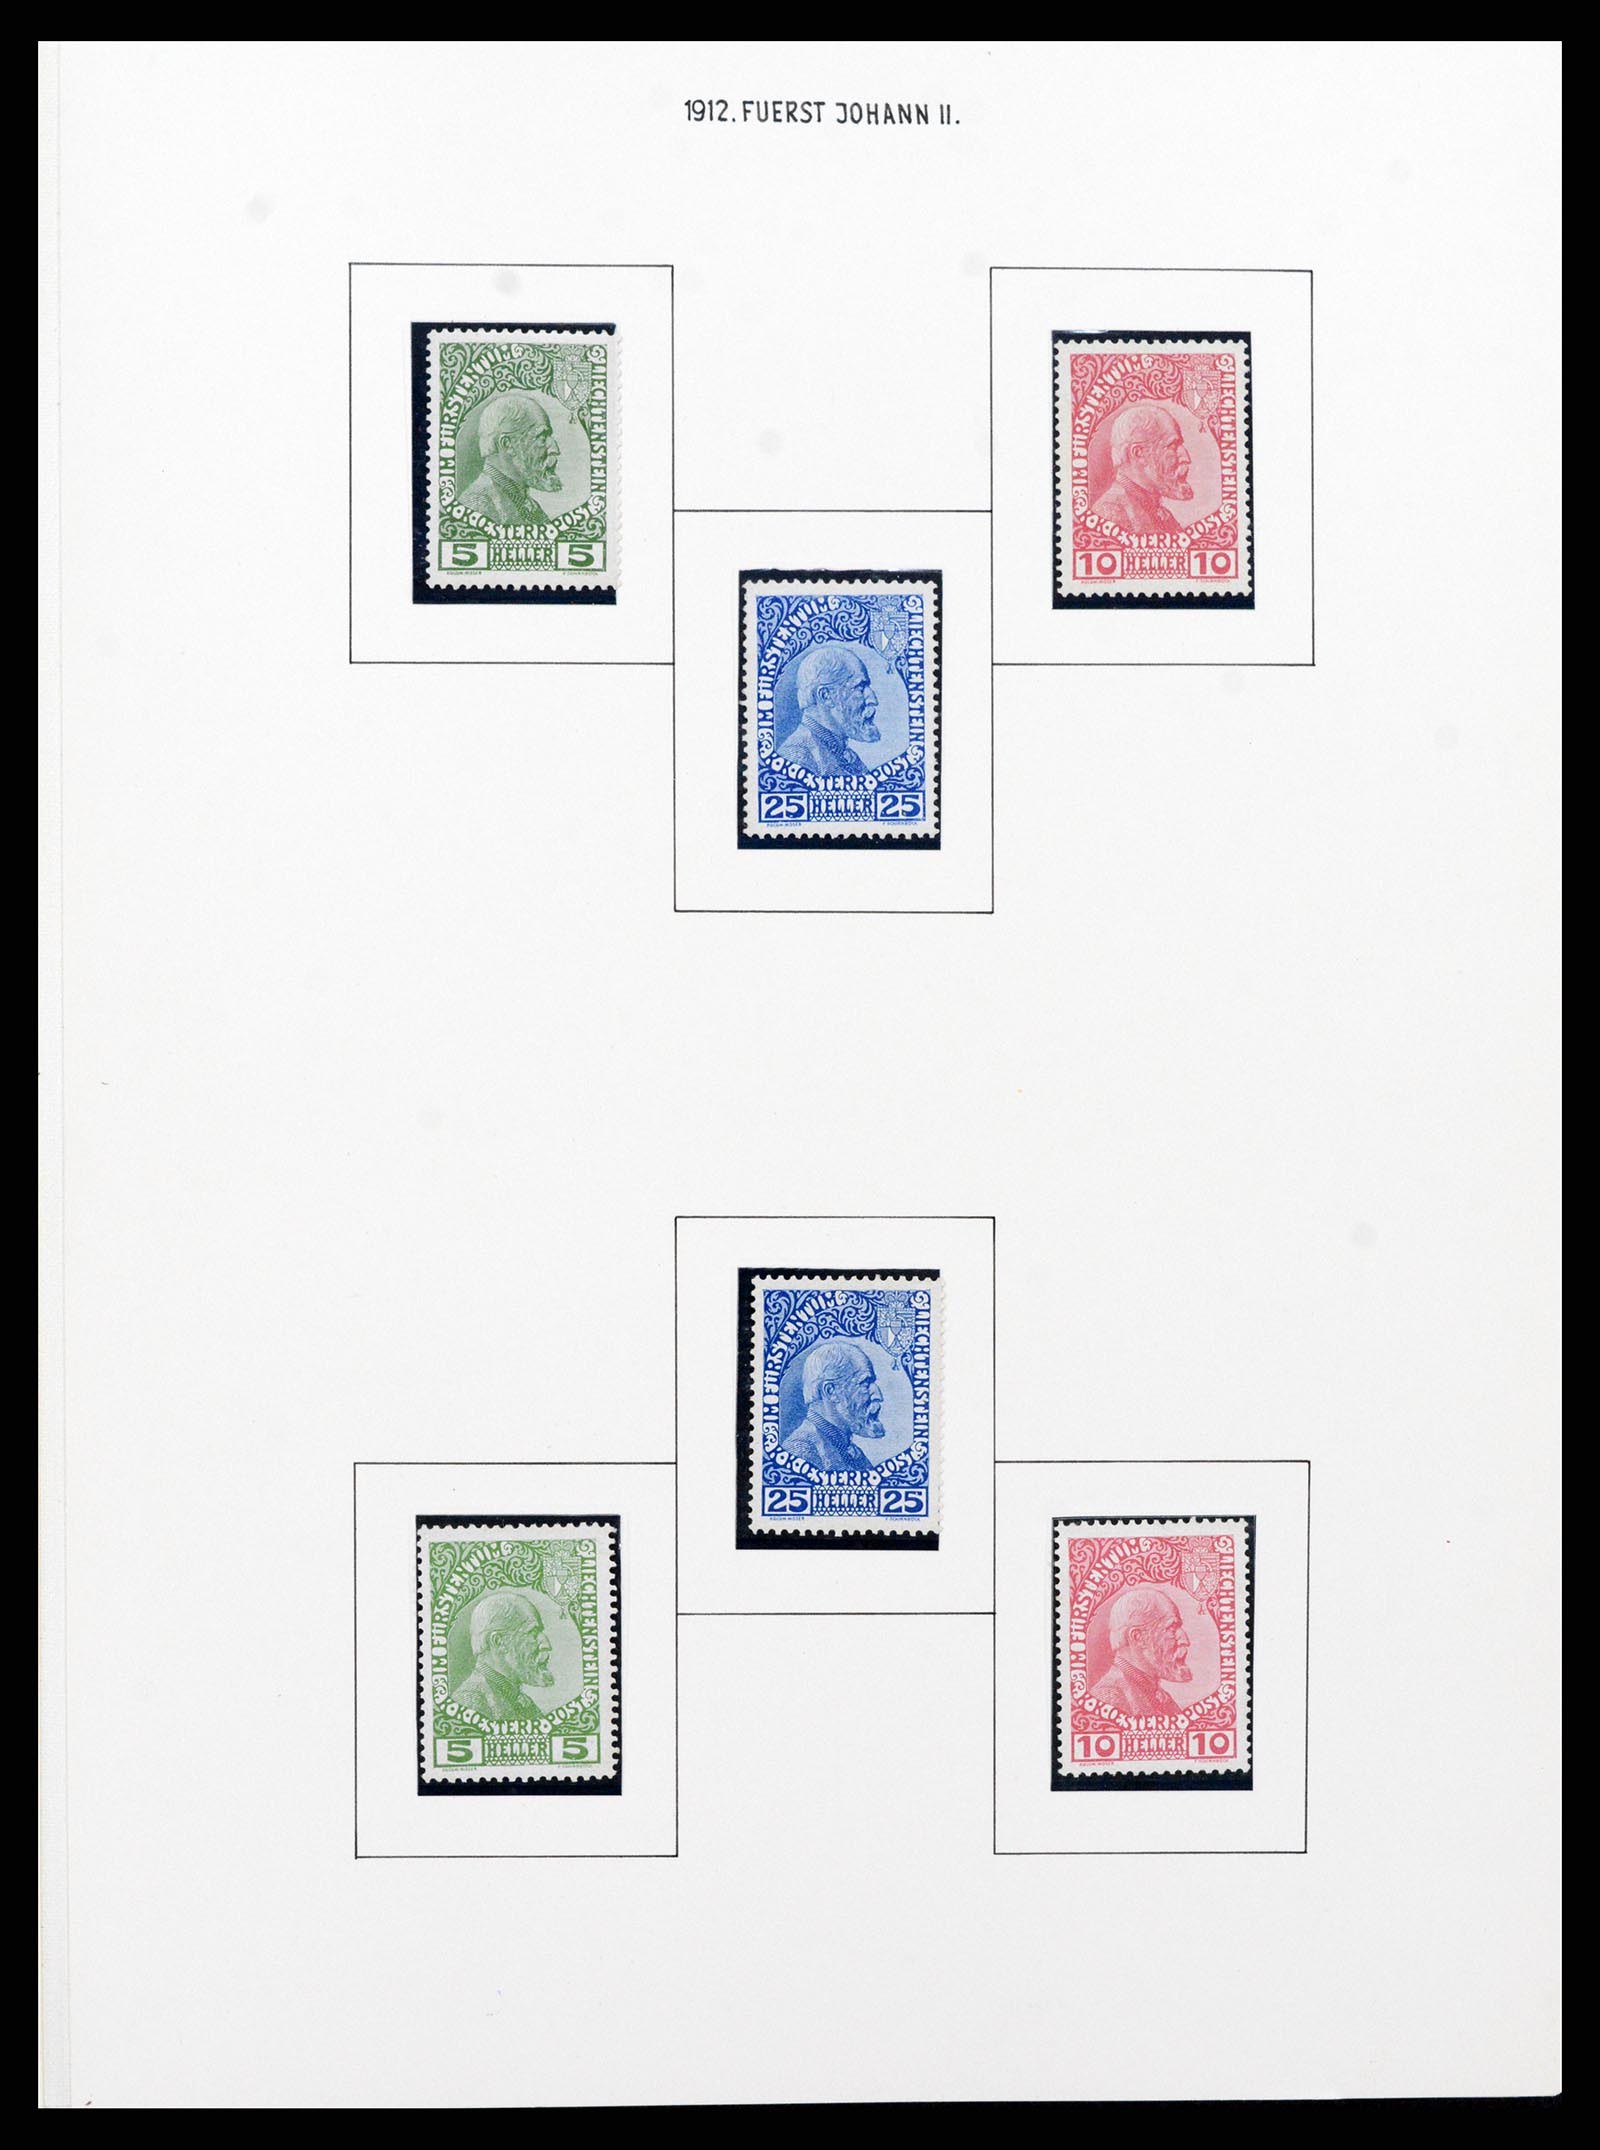 37150 0001 - Stamp collection 37150 Liechtenstein supercollection 1912-1962.